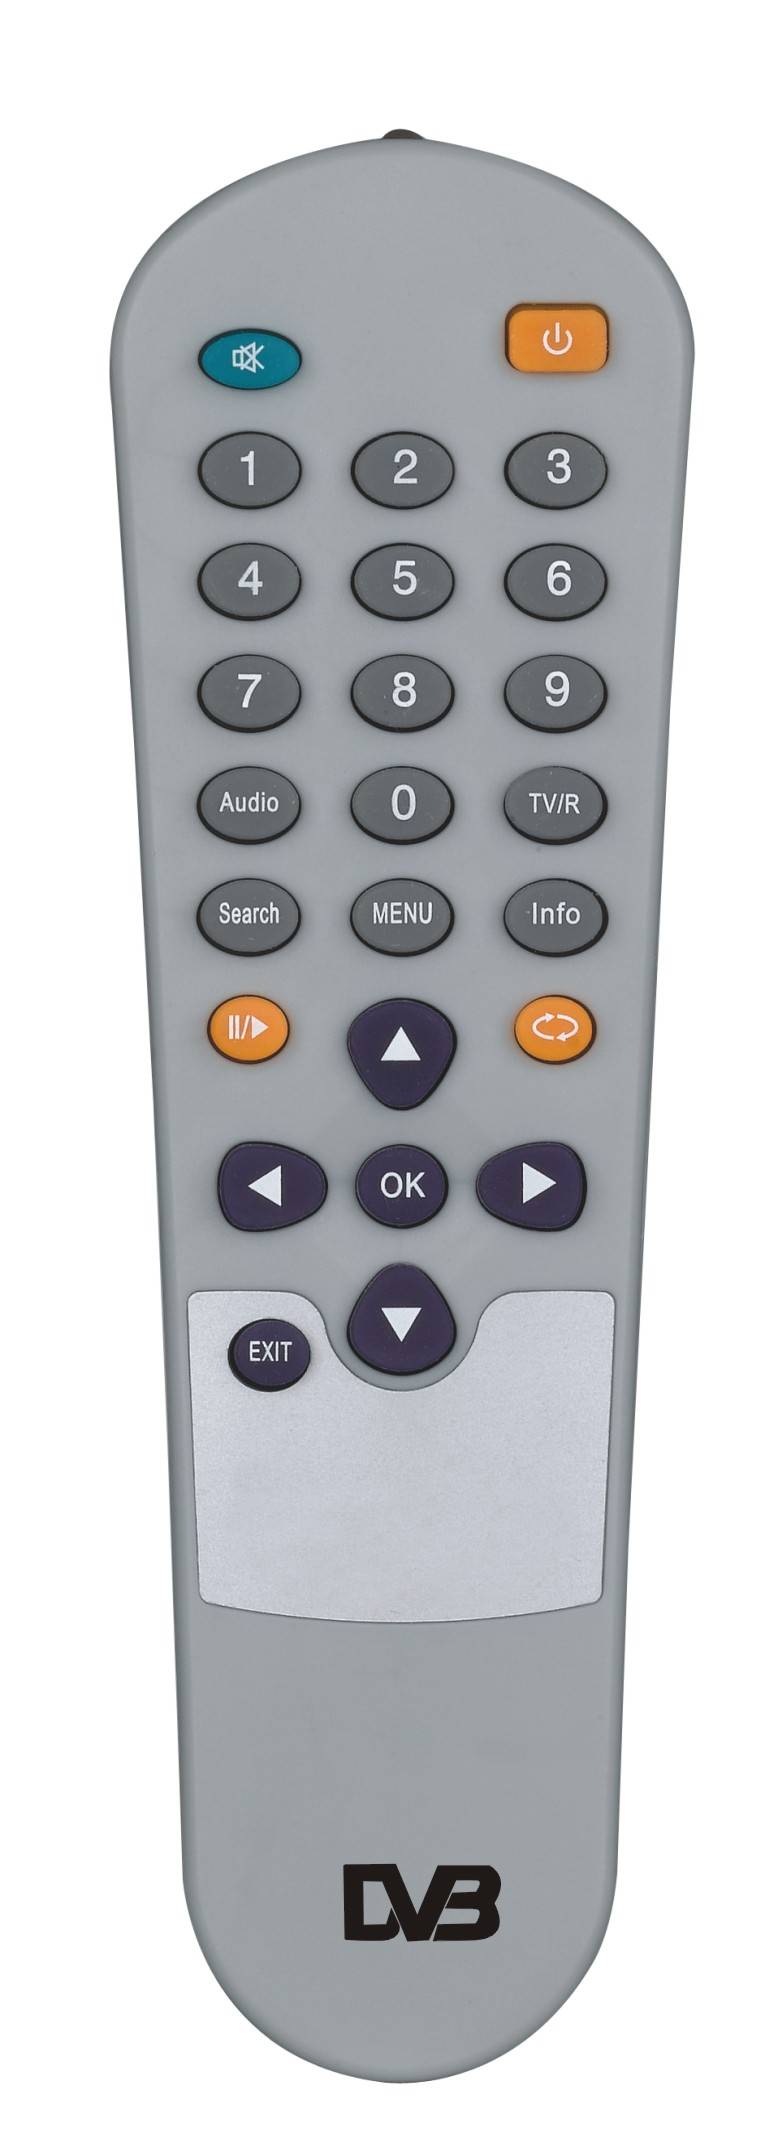 DVB remote